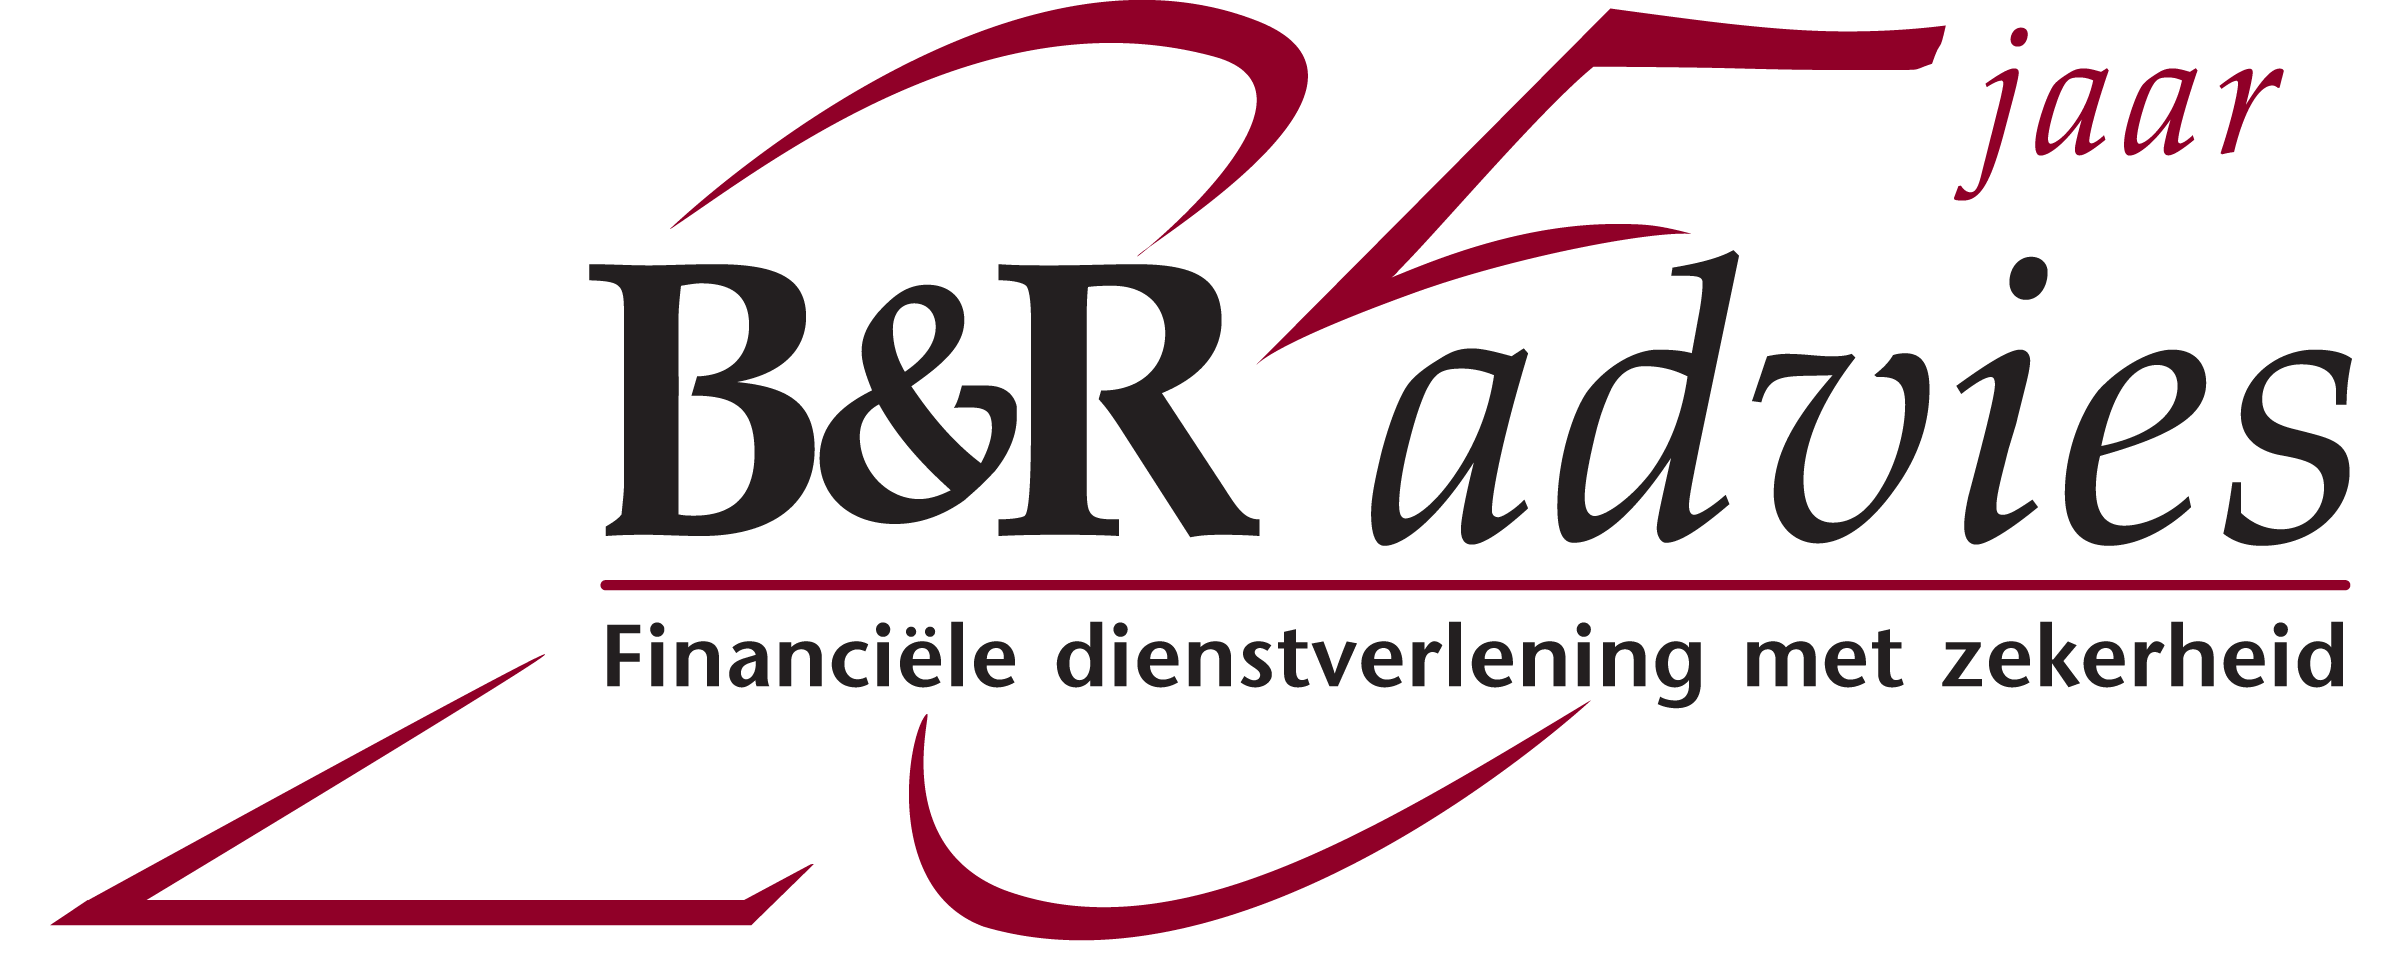 B&R Advies BV 20 Jaar